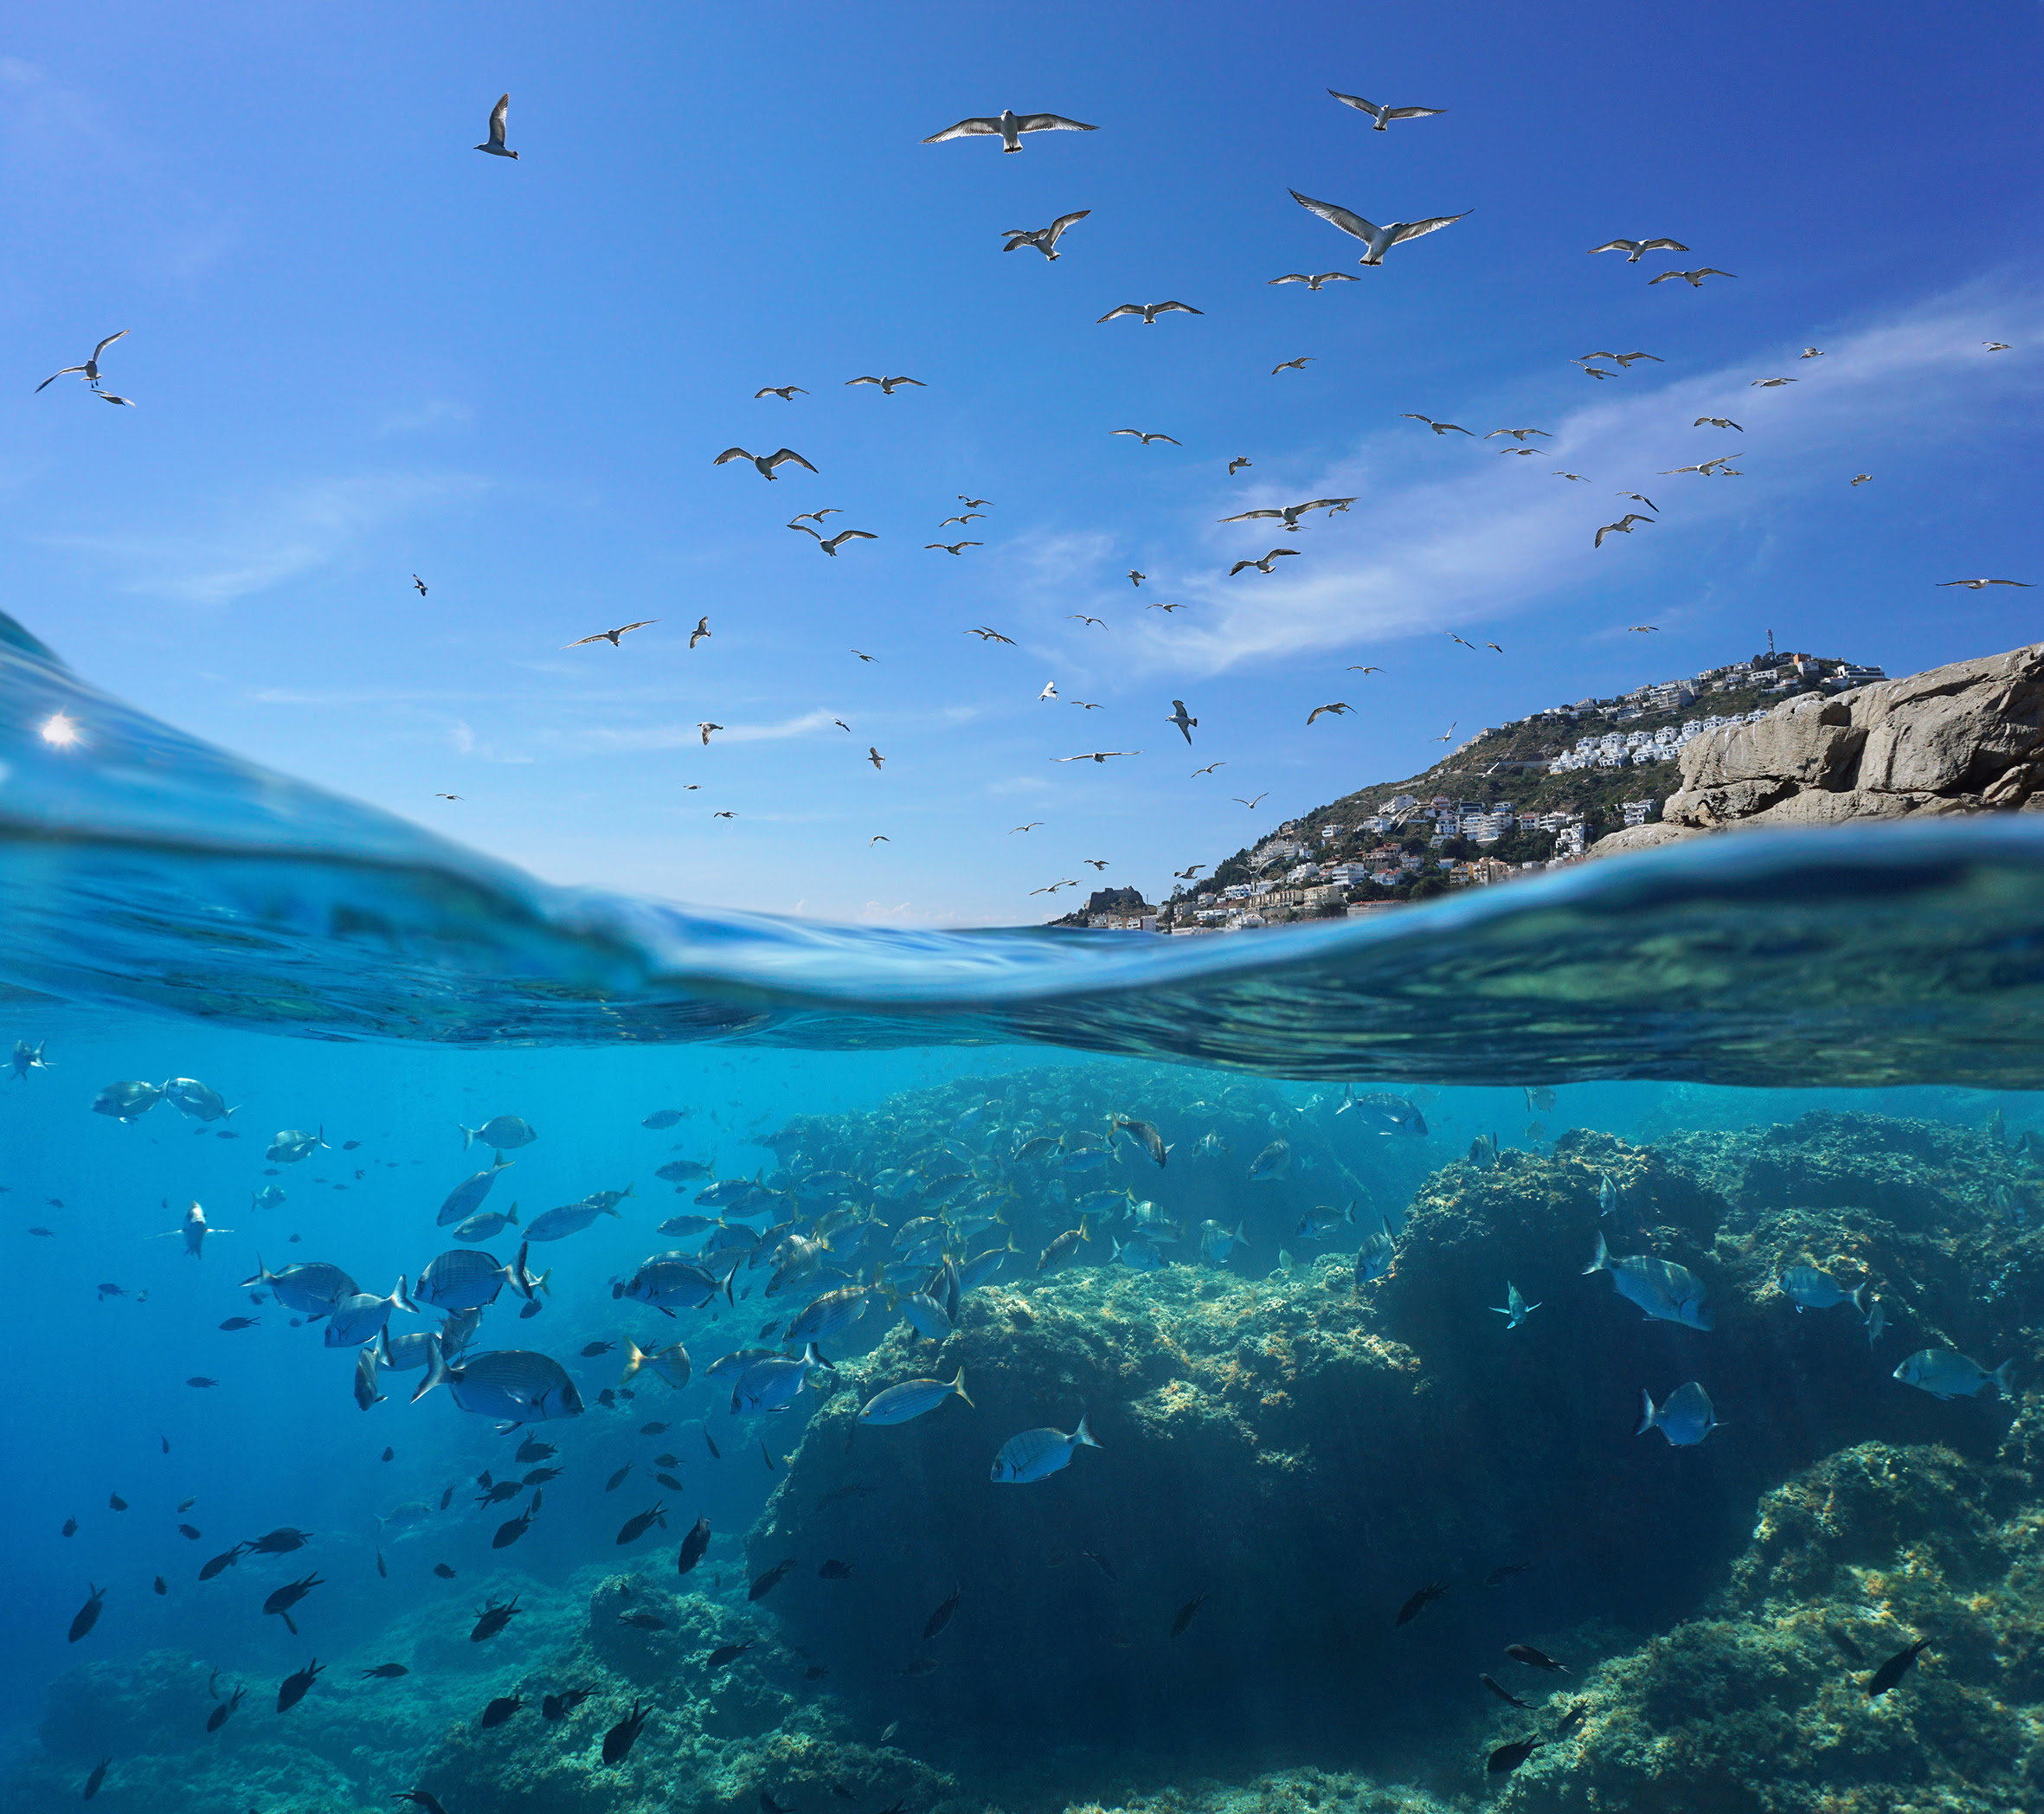 La costa levantina y el mar de Alborán, en España, es una de las zonas cuya conservación resulta clave para recuperar la biodiversidad. Imagen: WWF